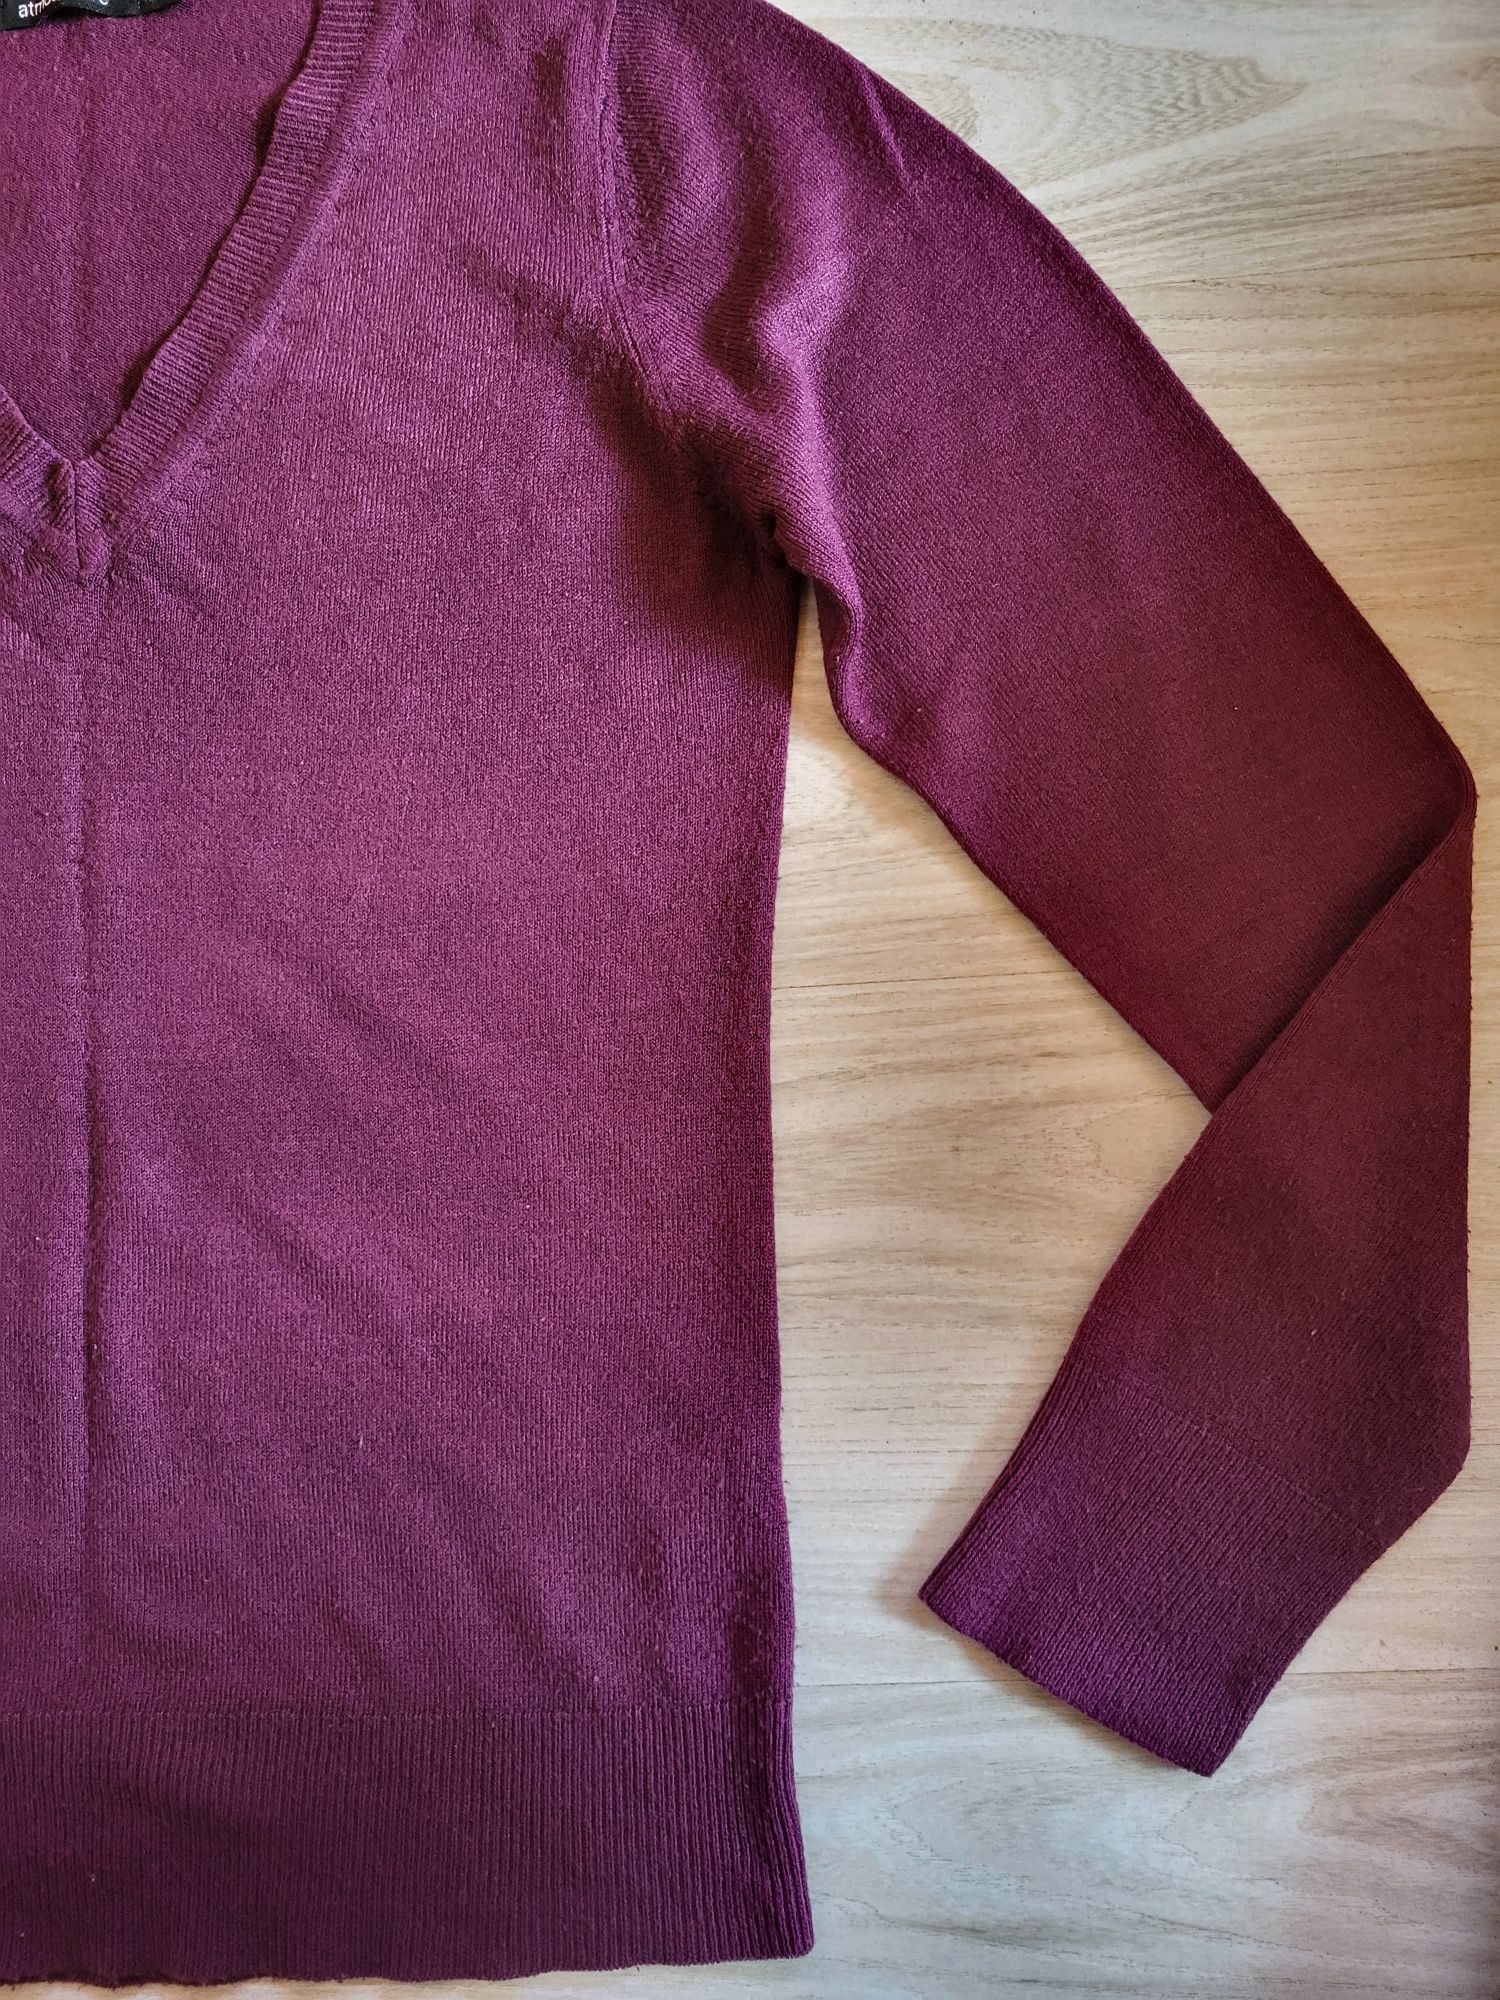 Sweterek fioletowy bluzka śliwkowa M/L Atmosphere